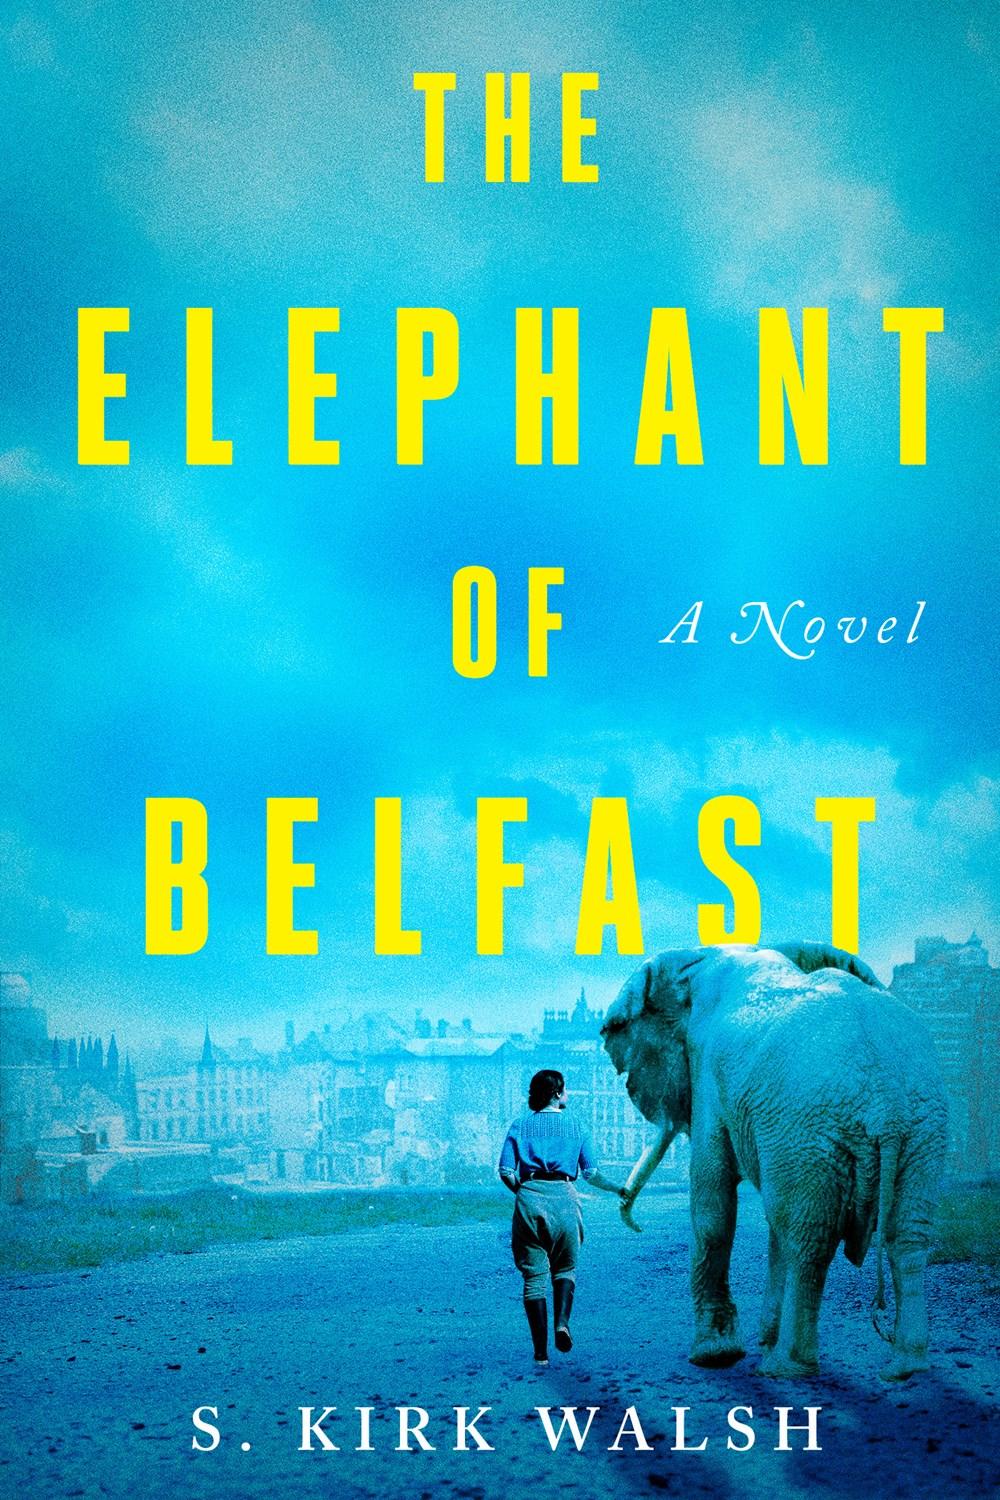 Belfast Review